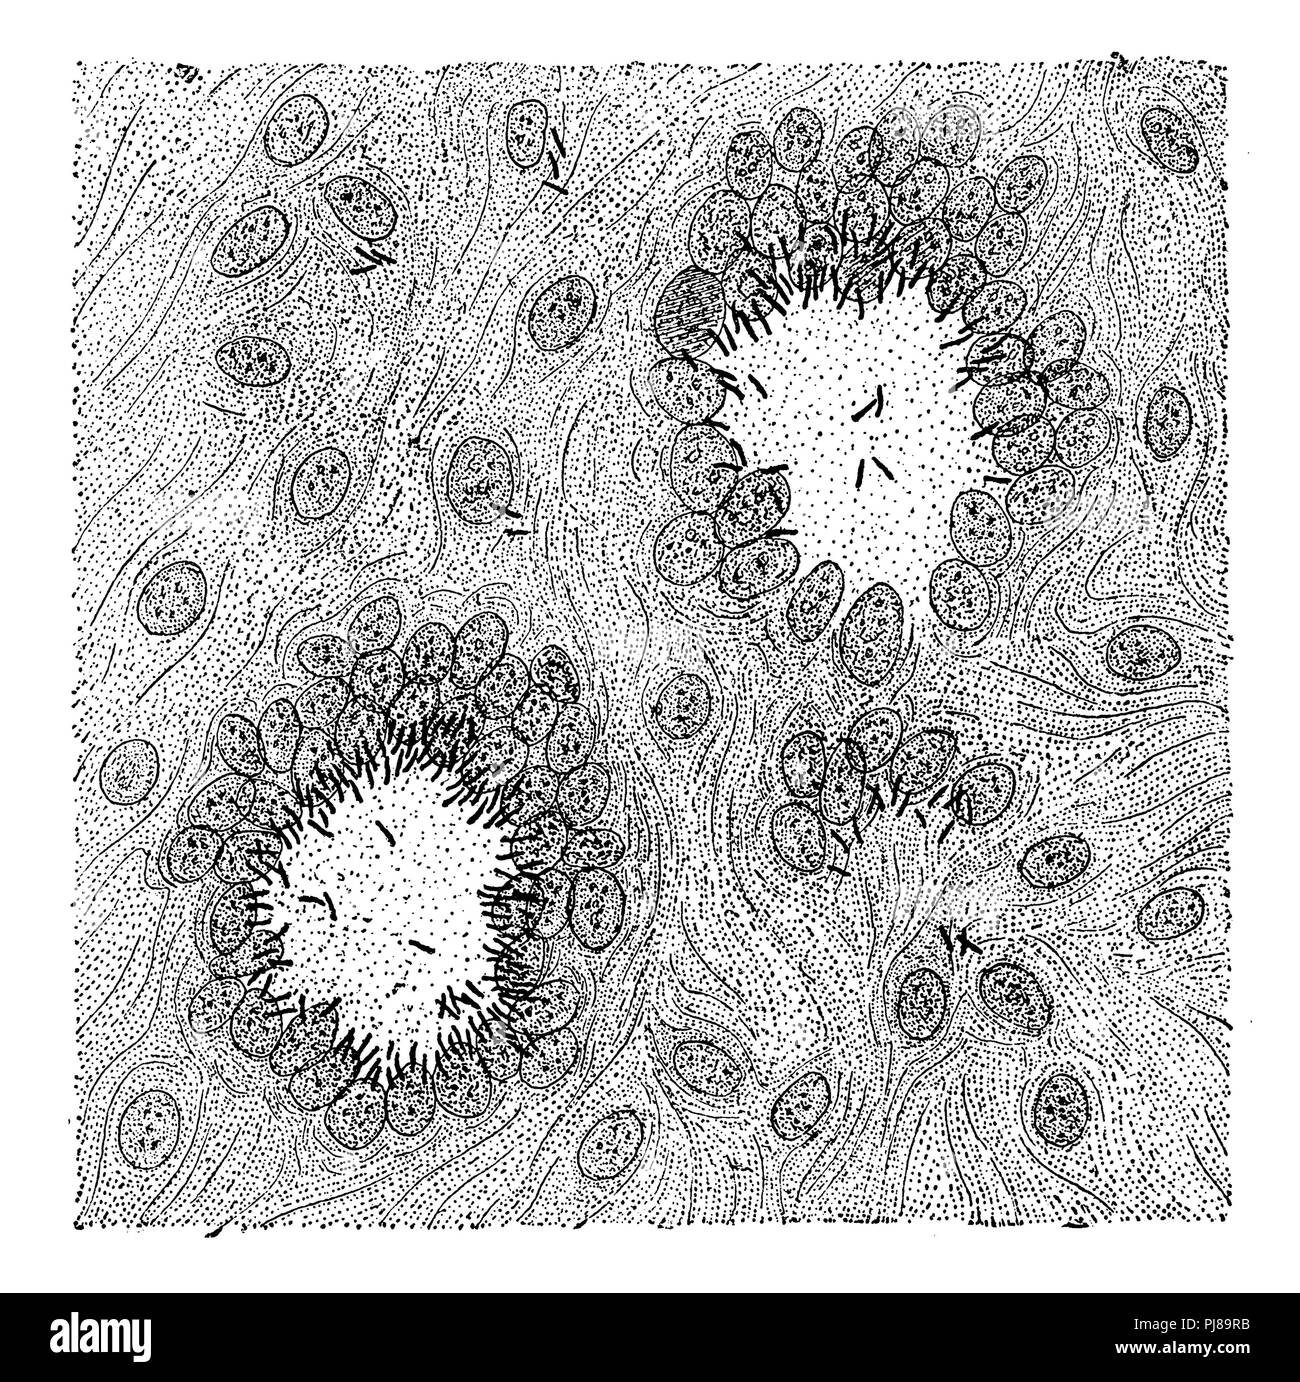 Tuberkulosebakterium: Schnitt durch ein tuberkel Knoten der Lunge, mit zwei riesigen Zellen mit tuberkel Bakterien infiziert (die schwarzen Linien sind die Tuberkulose Bakterien), anonym 1892 Stockfoto